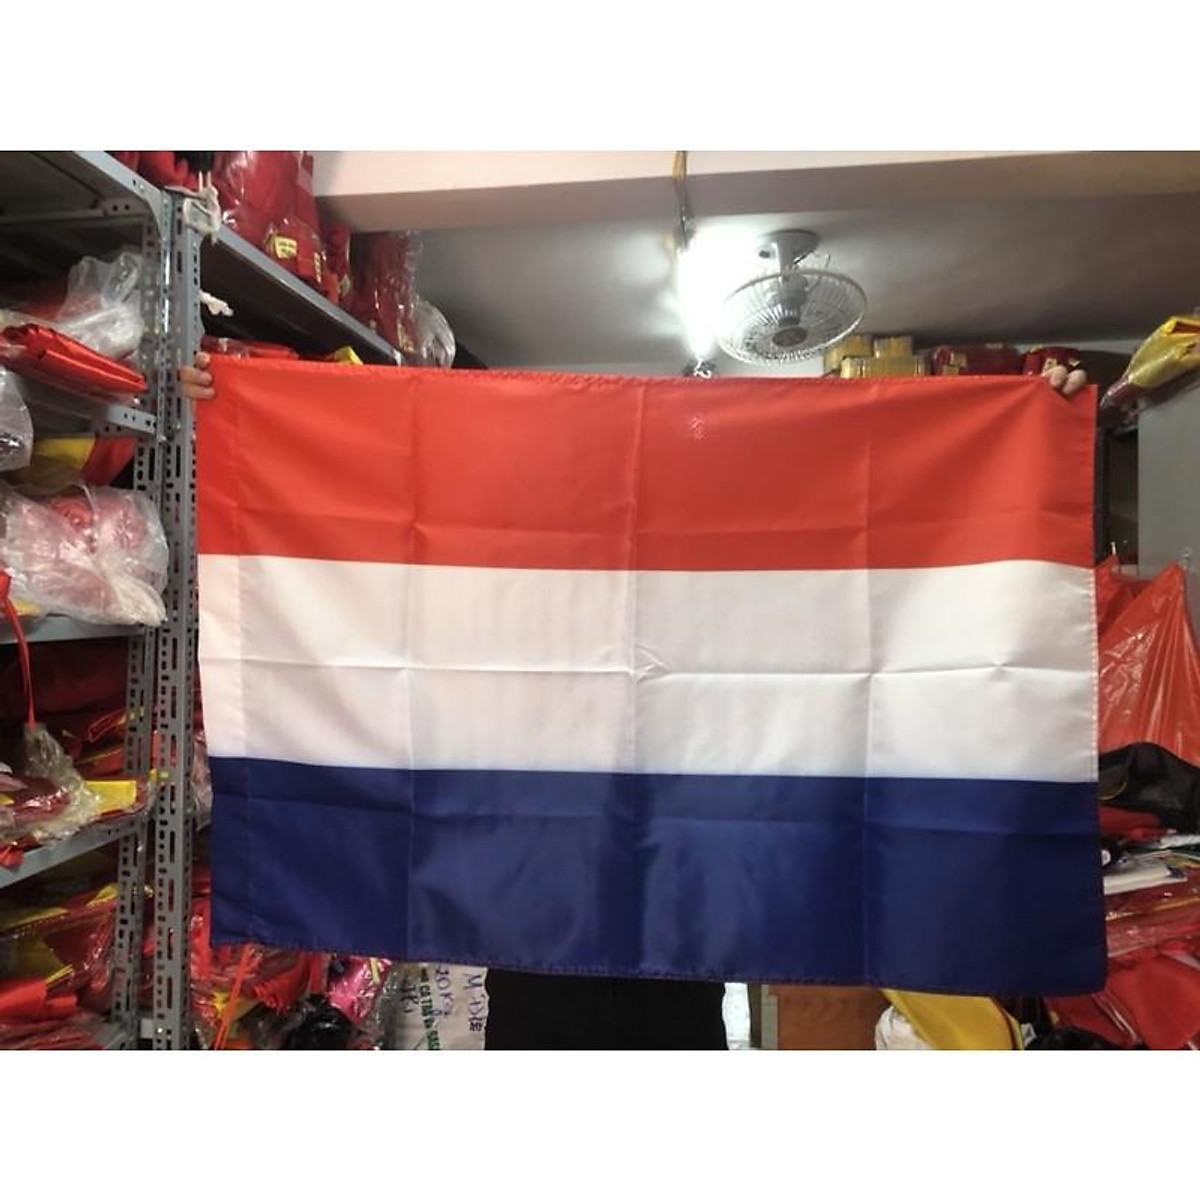 Cờ quốc kỳ Hà Lan không chỉ mang tính chất biểu tượng cho đất nước mà còn khiến cho không gian sống của bạn thêm phần ấm cúng và trang trọng. Hãy trang trí nhà cửa của bạn bằng cờ quốc kỳ Hà Lan để tạo nên một không gian sống ấn tượng và đầy tính cảm hứng.